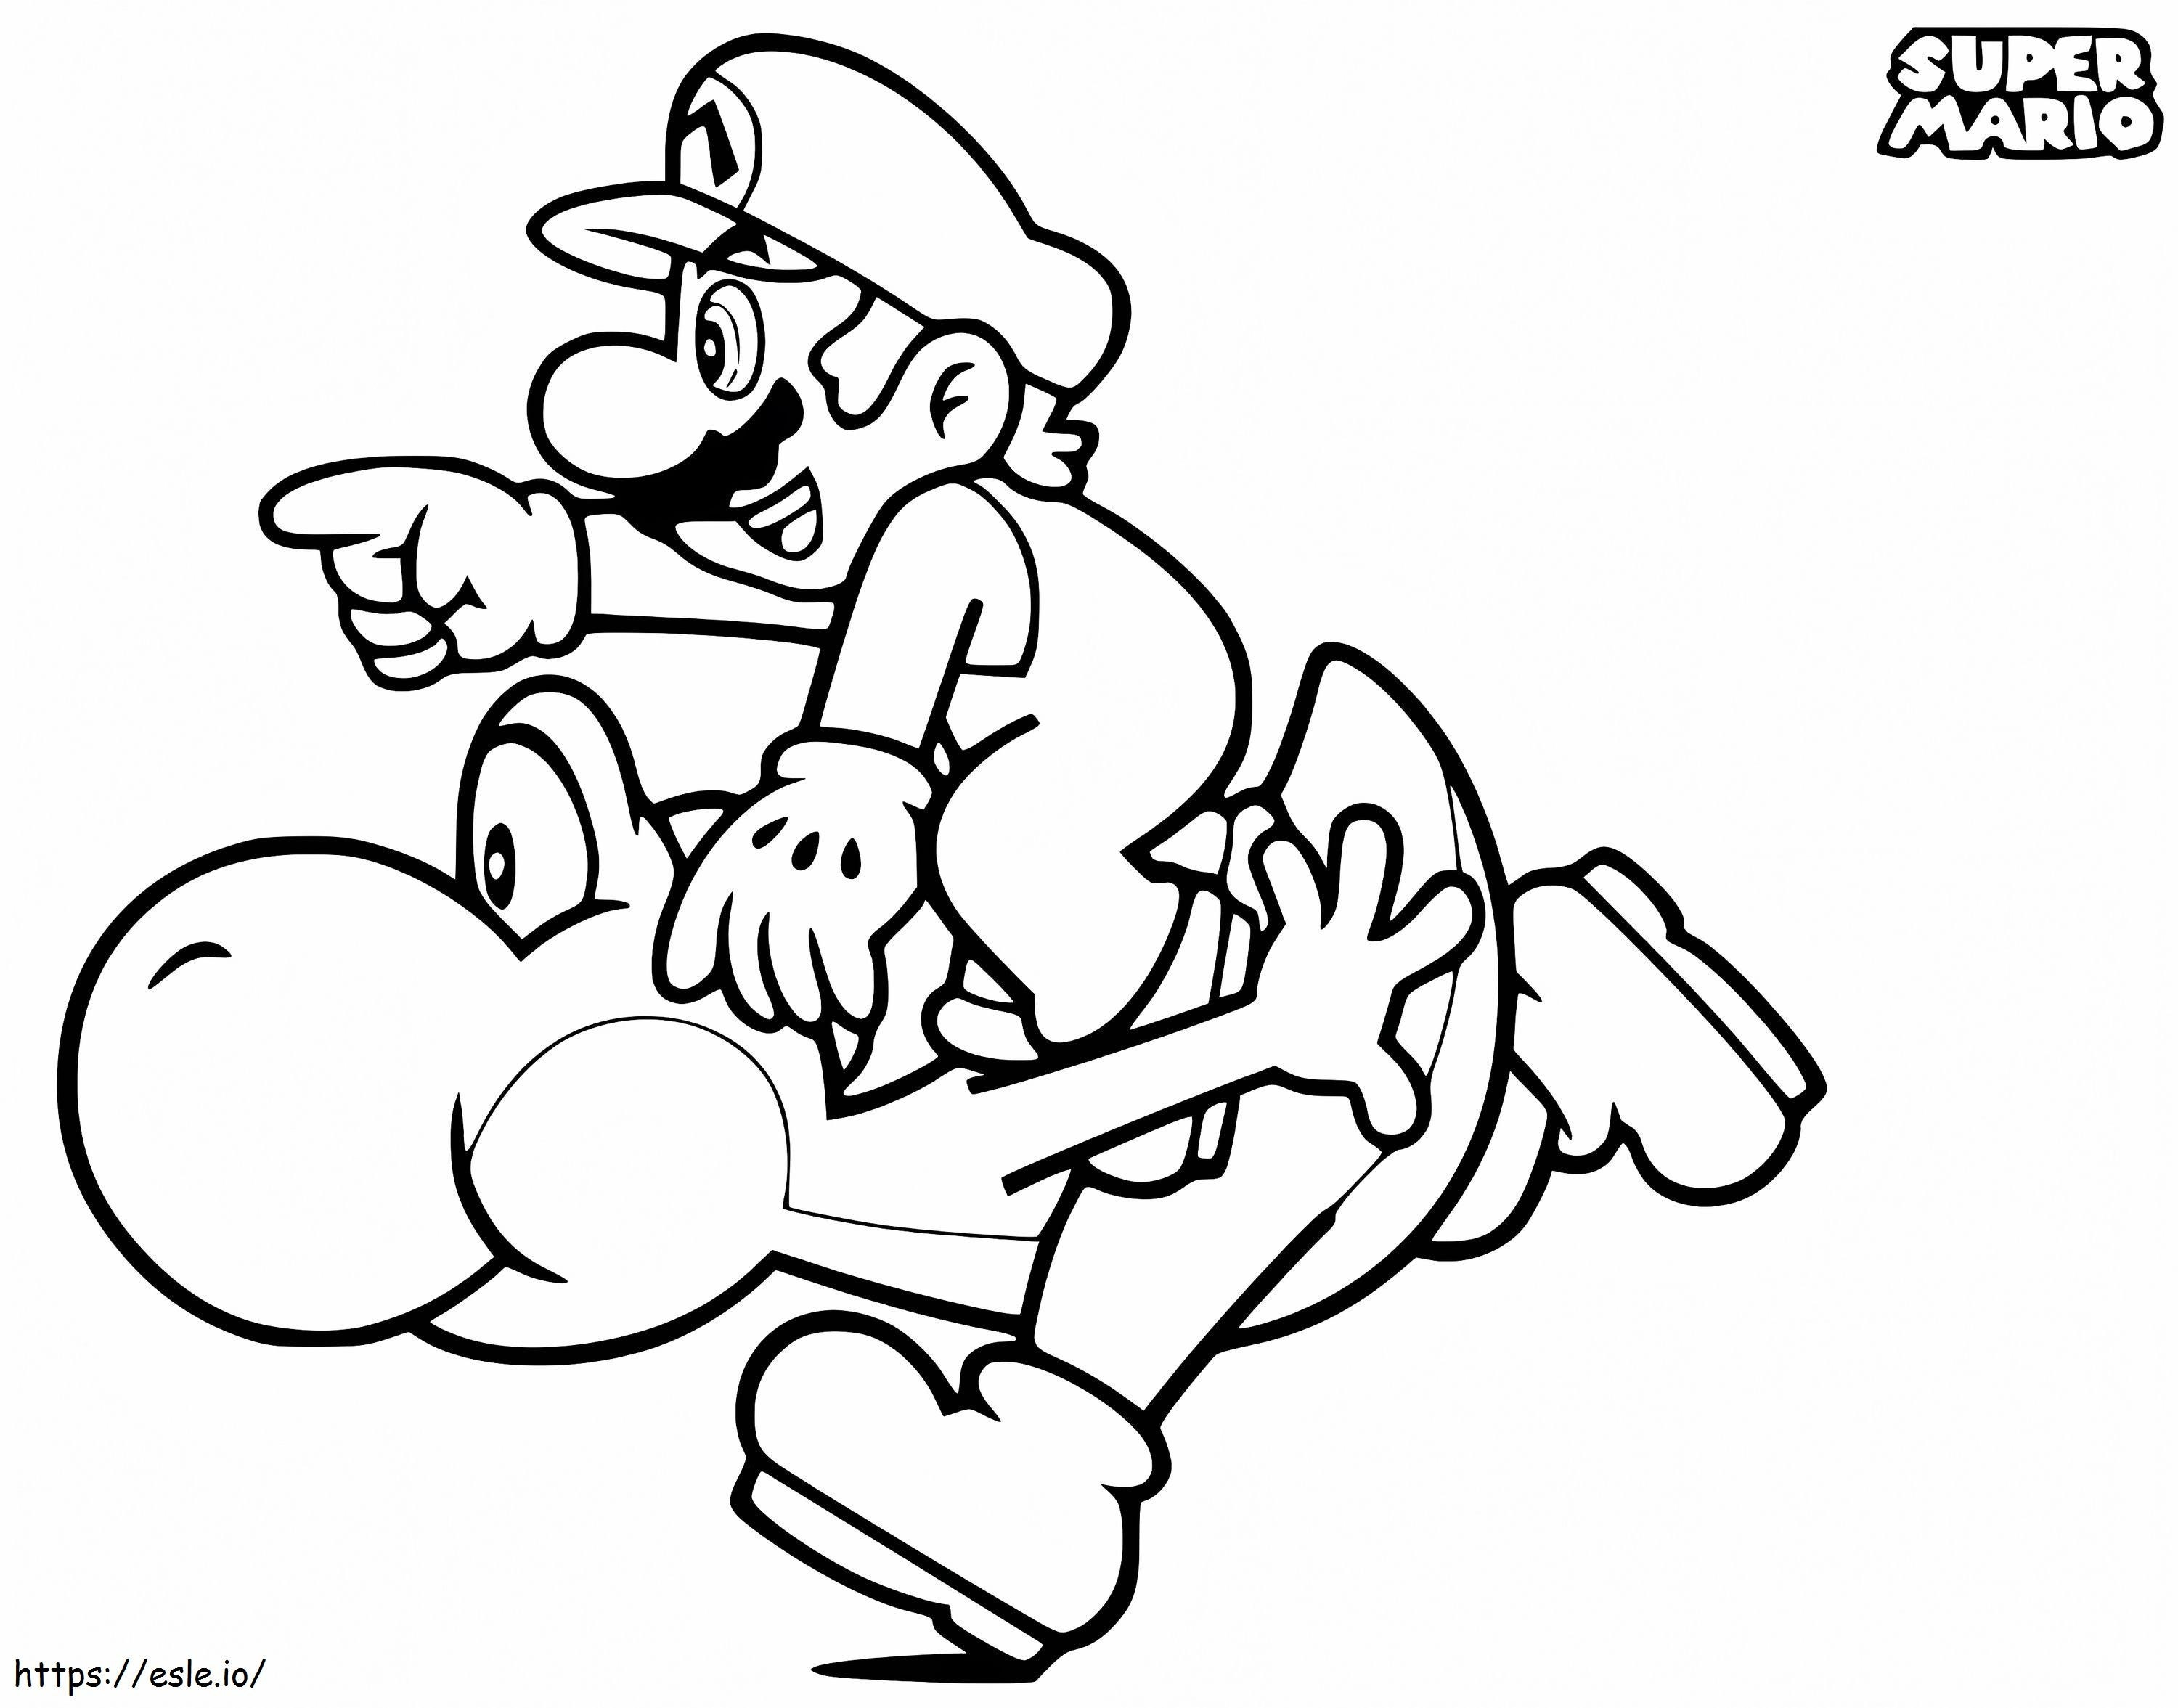 Mario und Yoshi ausmalbilder